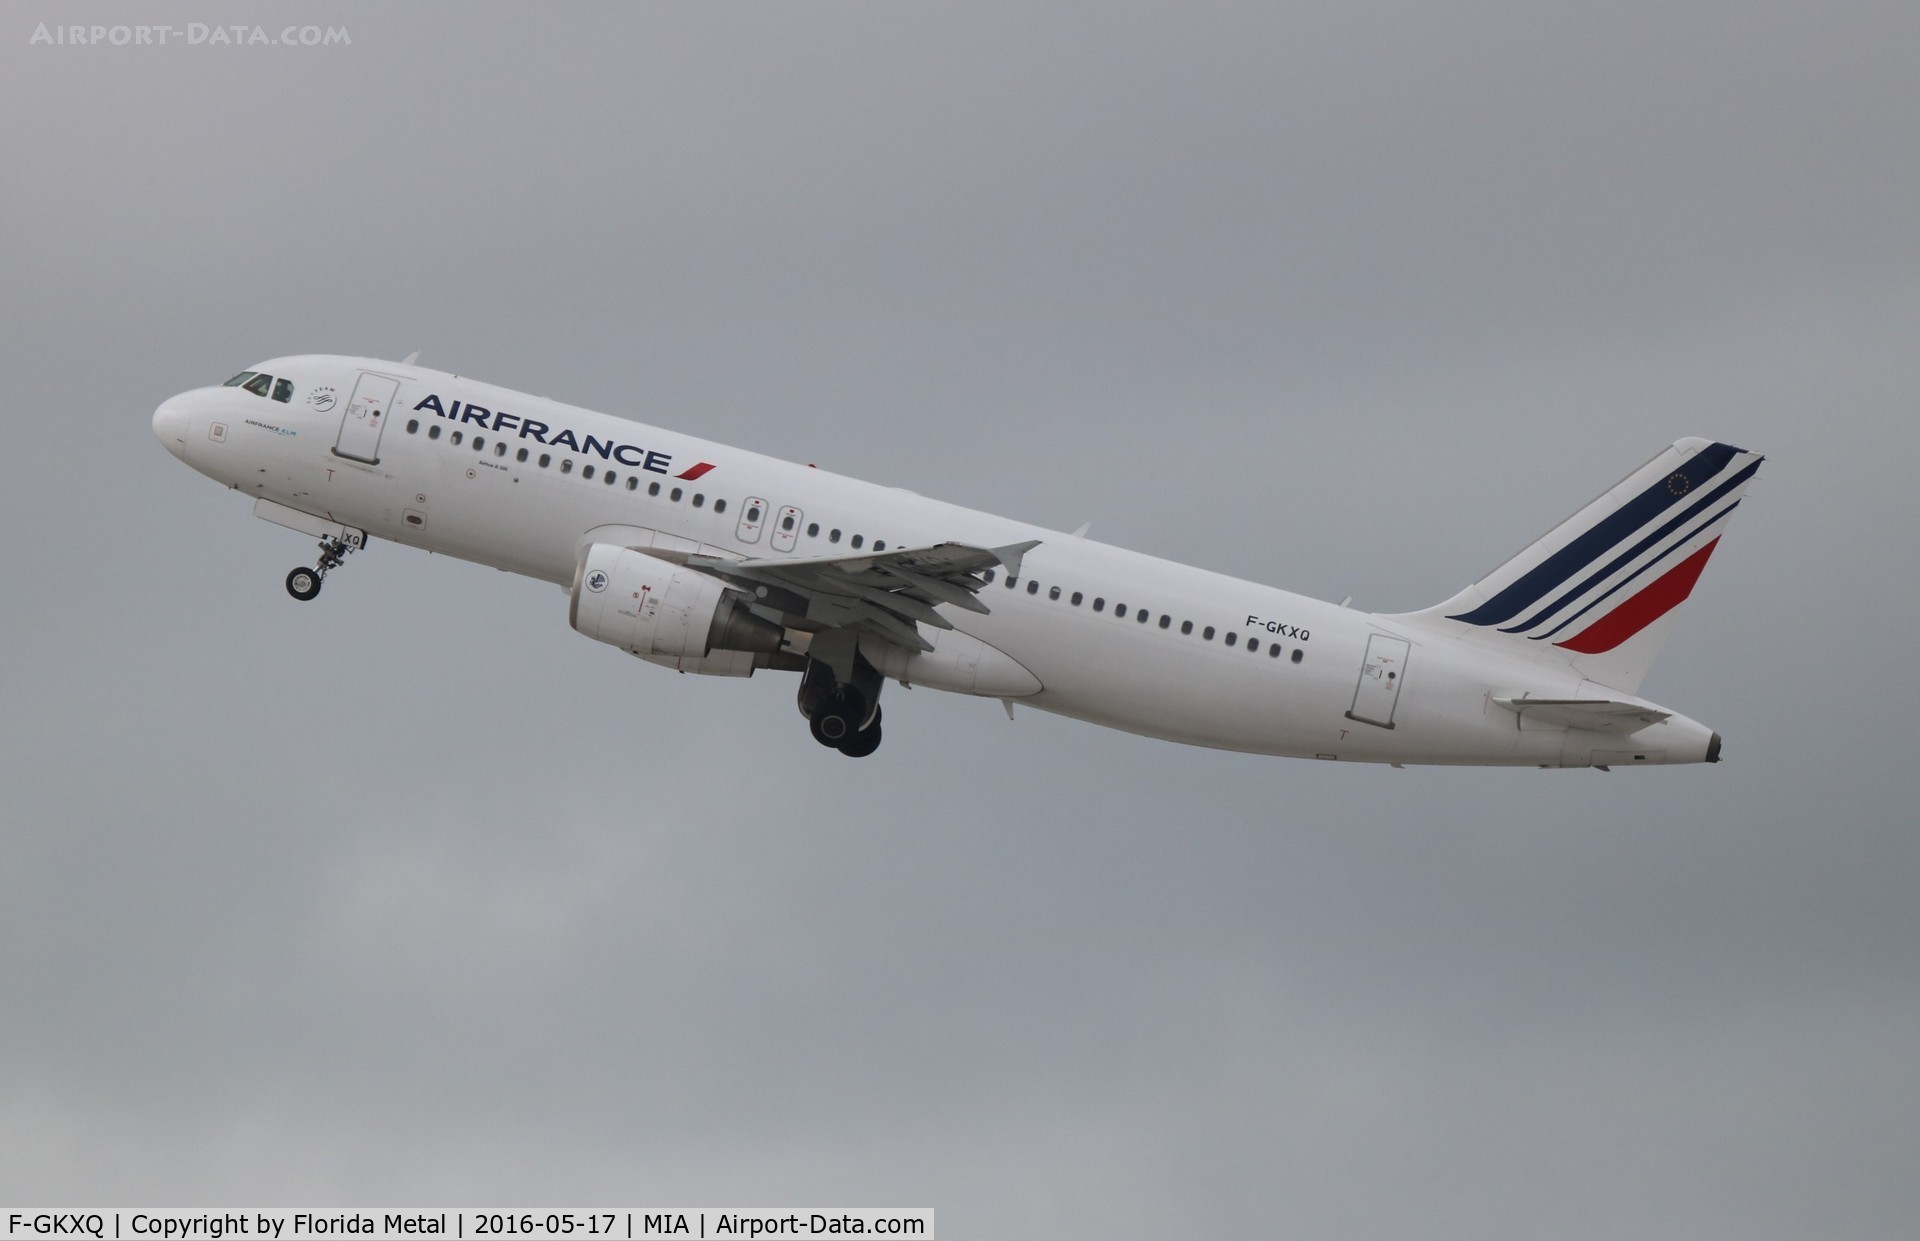 F-GKXQ, 2009 Airbus A320-214 C/N 3777, Air France